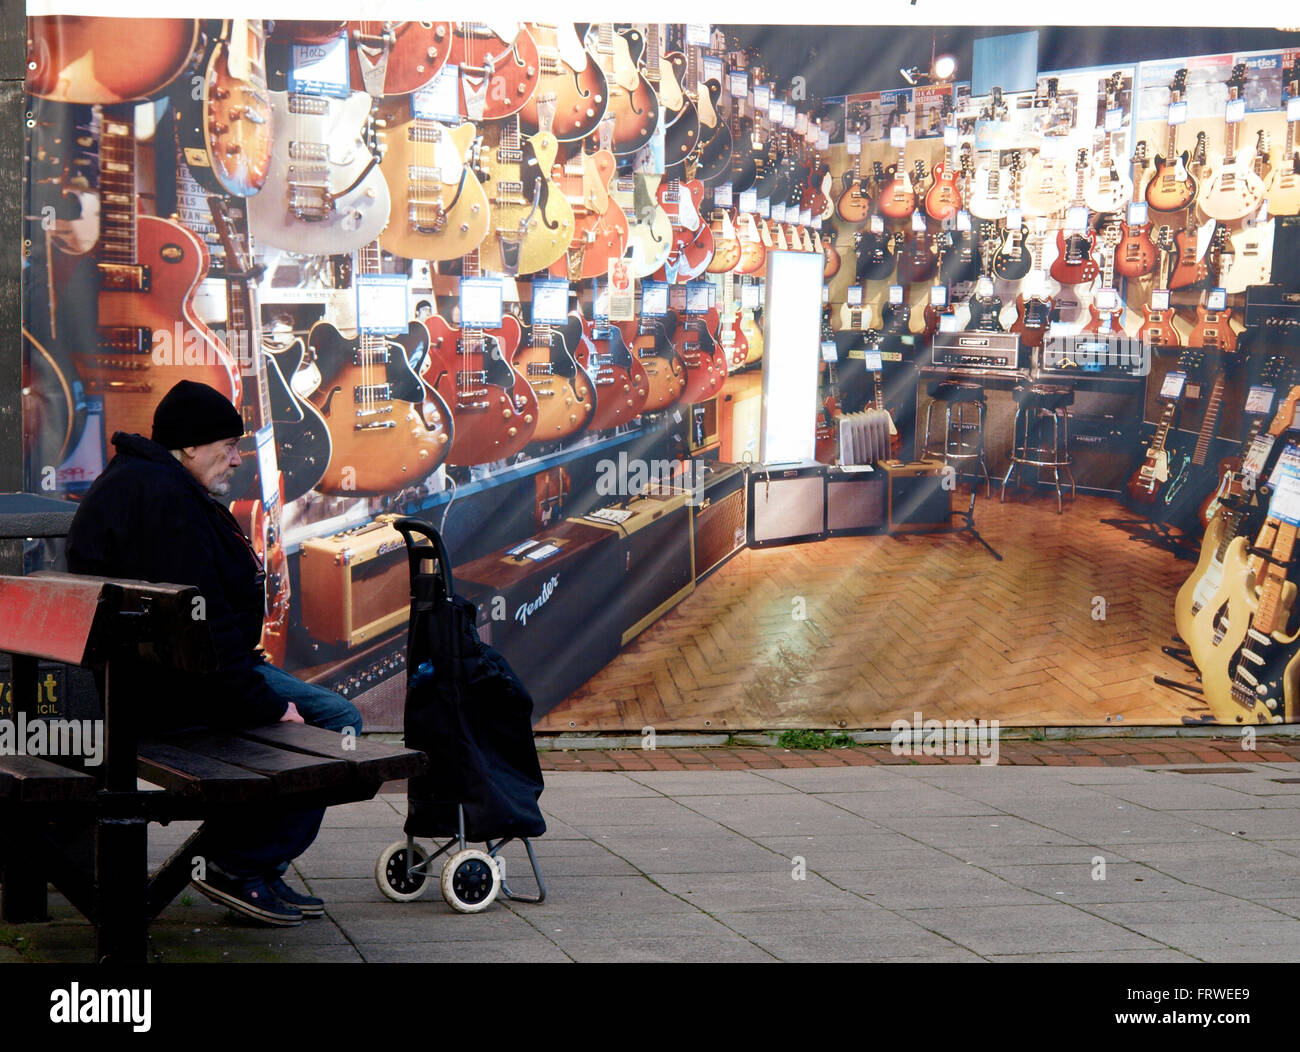 Alter Mann saß auf einer öffentlichen Bank vor einem bestiegen, Geschäft, bedeckt mit einem Foto des Innenraums von einem Musikgeschäft, Havant, Hants Stockfoto